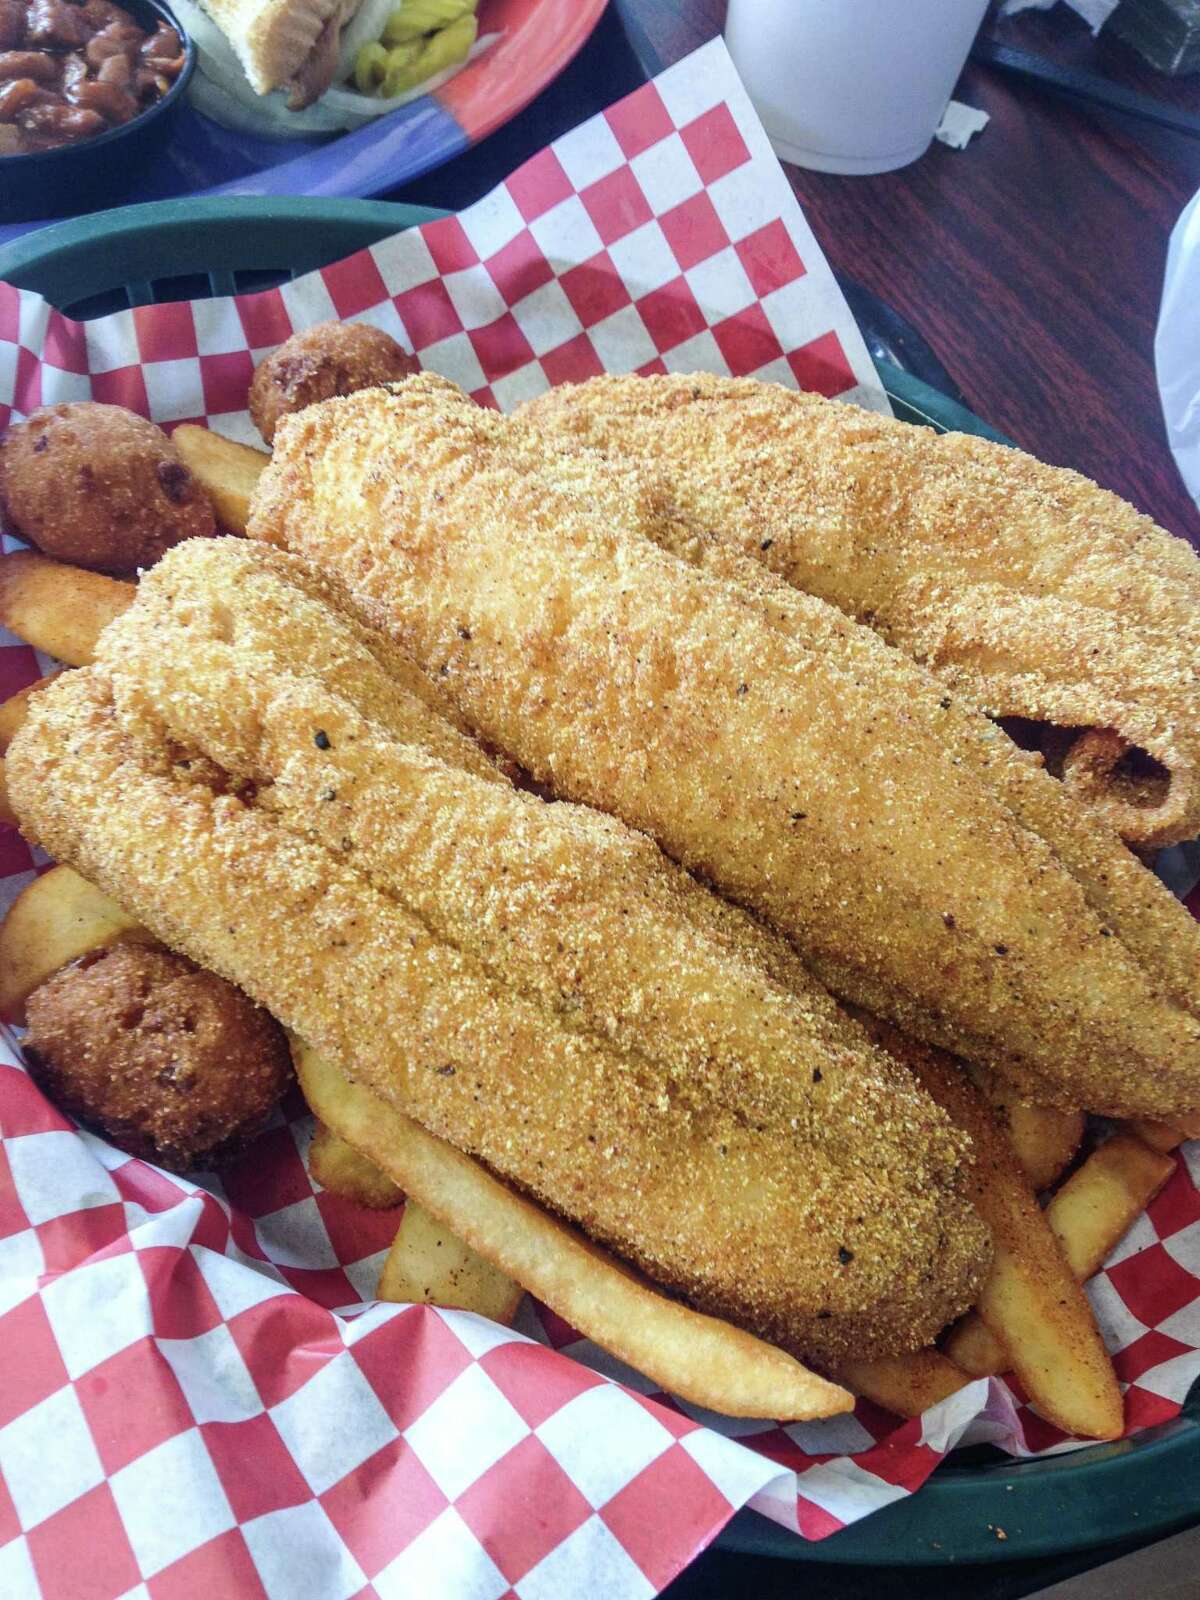 Fried catfish at Ray’s BBQ Shack